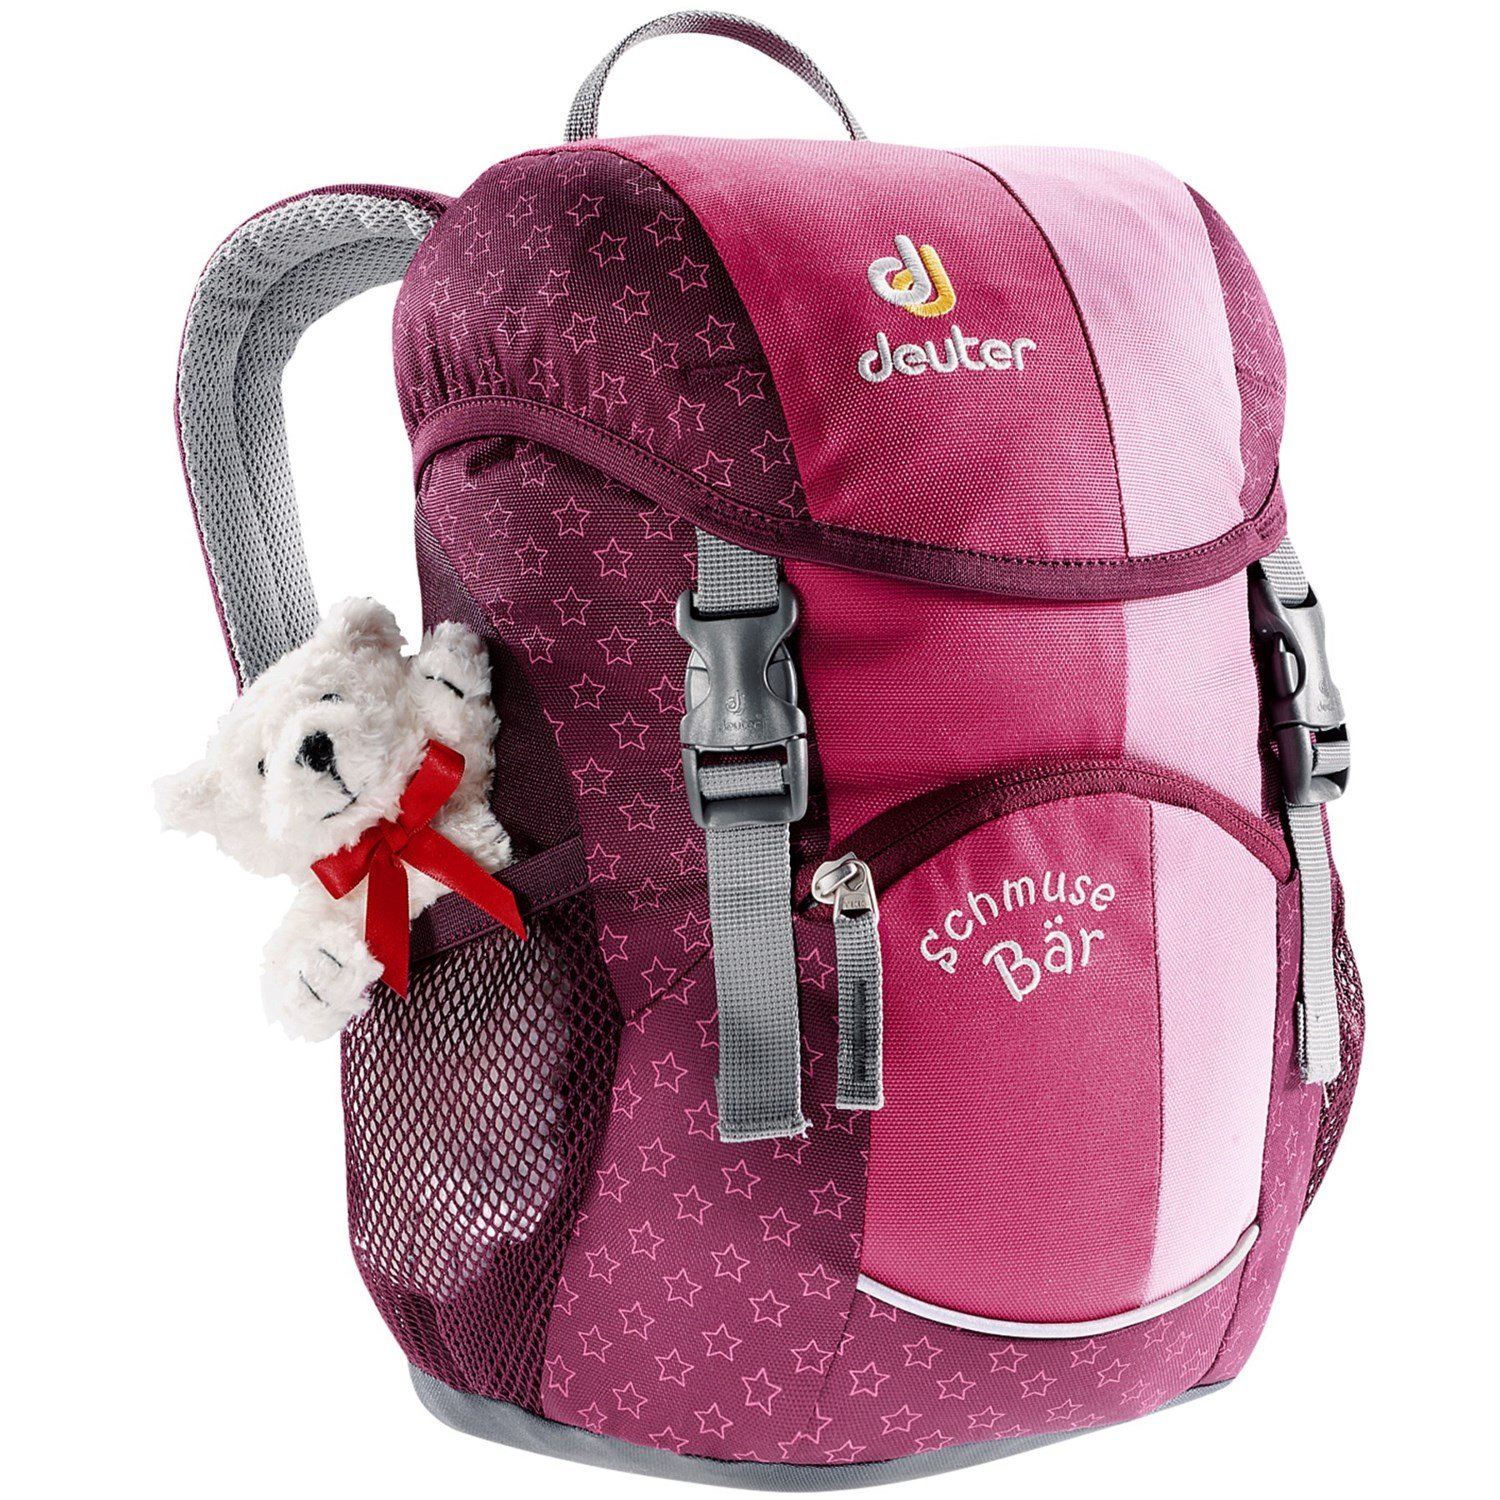 фото Велосипедный рюкзак deuter schmusebar, детский, 34х20х16, 8 л, розовый, 36003_5040